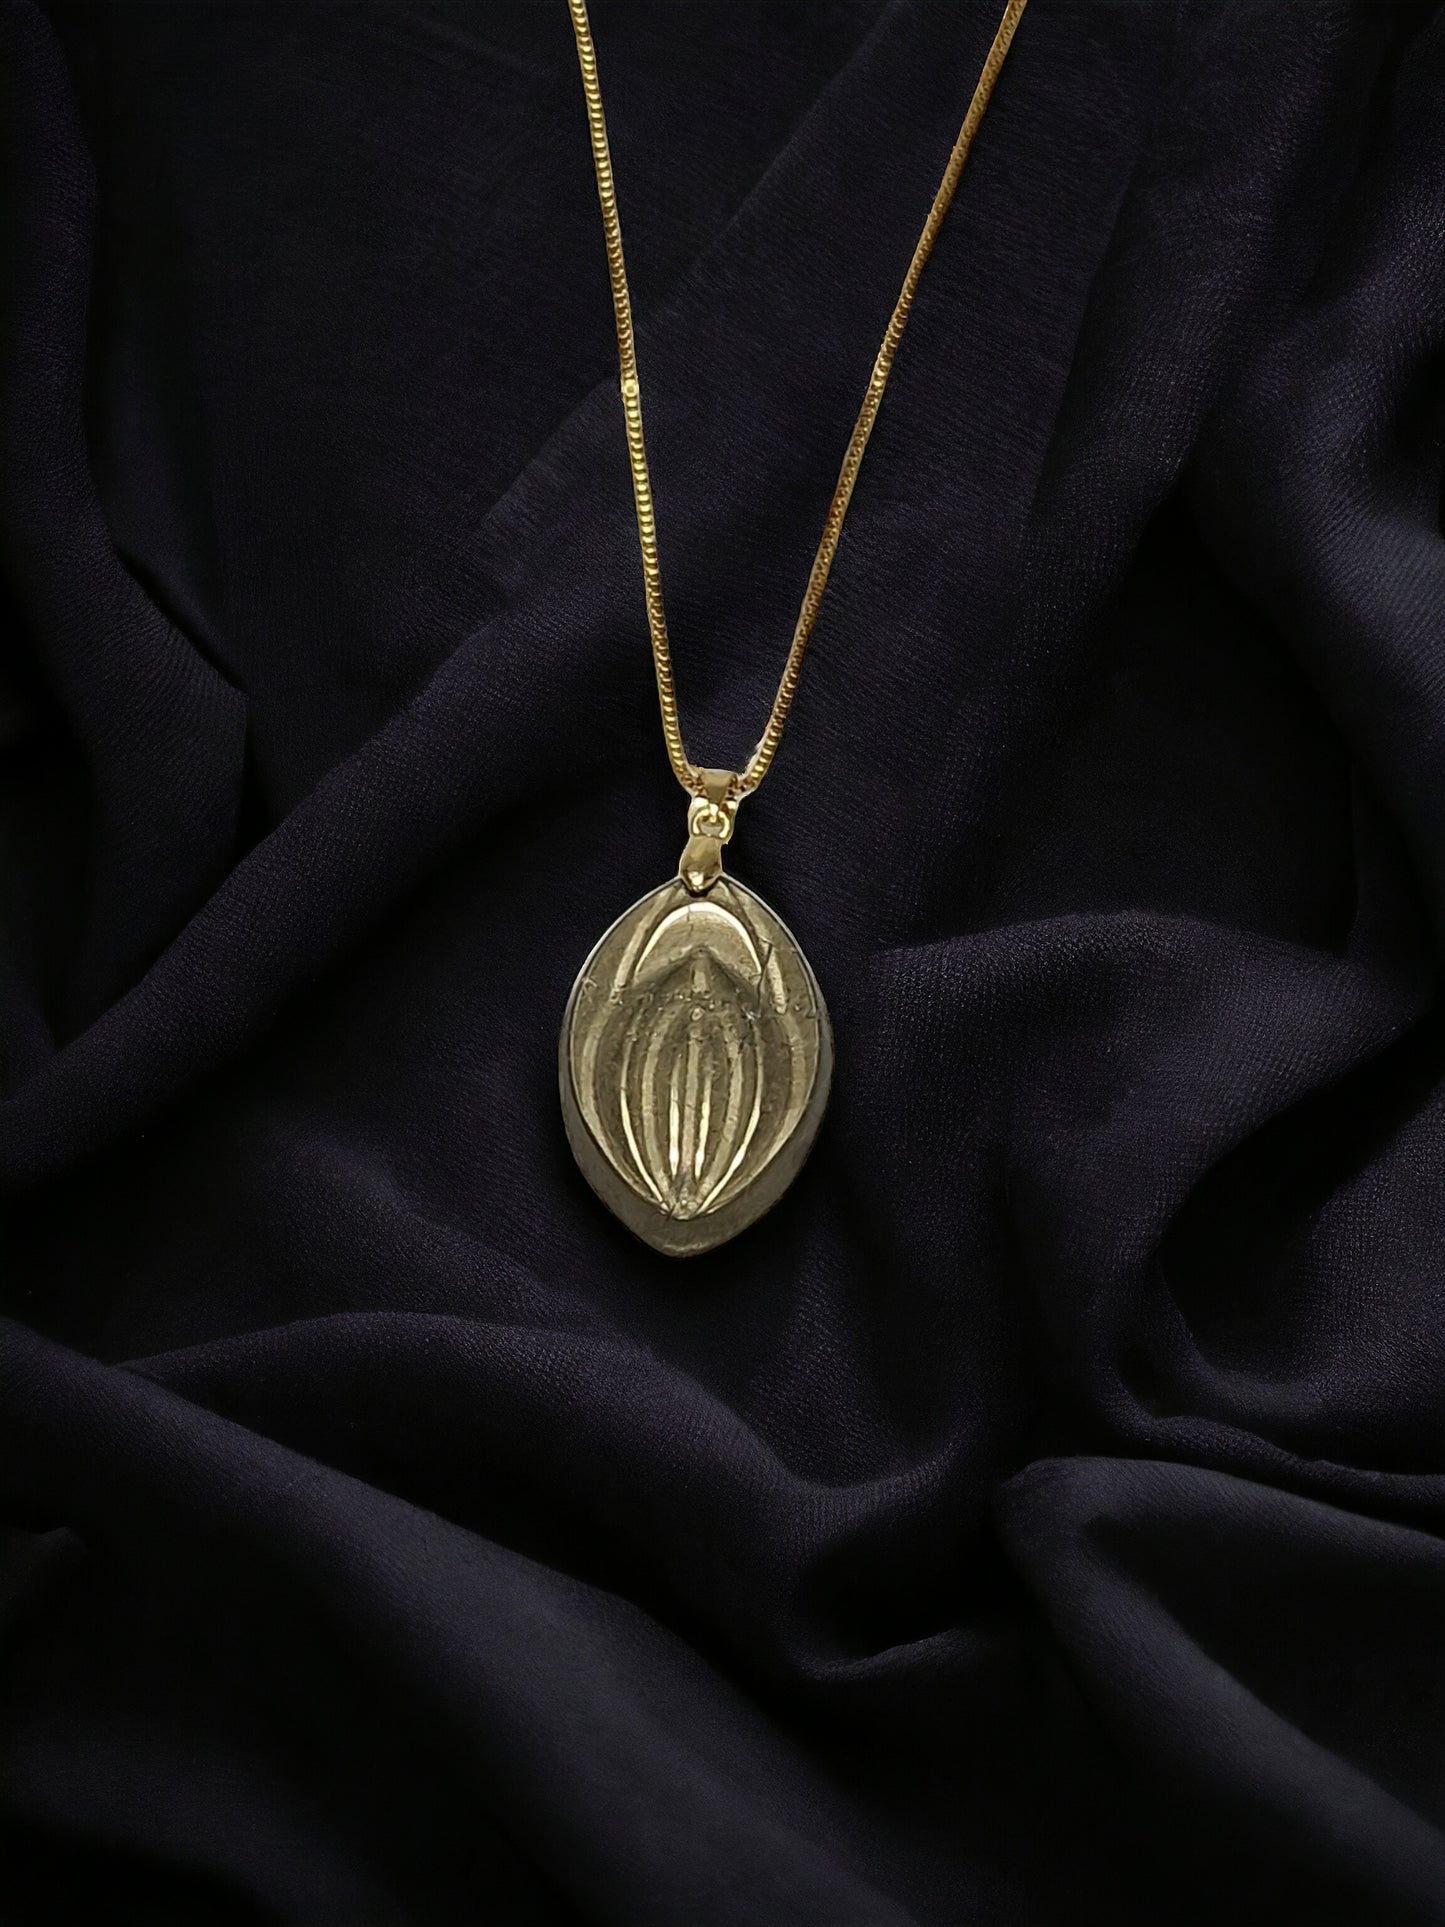 Un hermoso collar con un cristal de la piedra pirita, con forma de vagina o fifi.